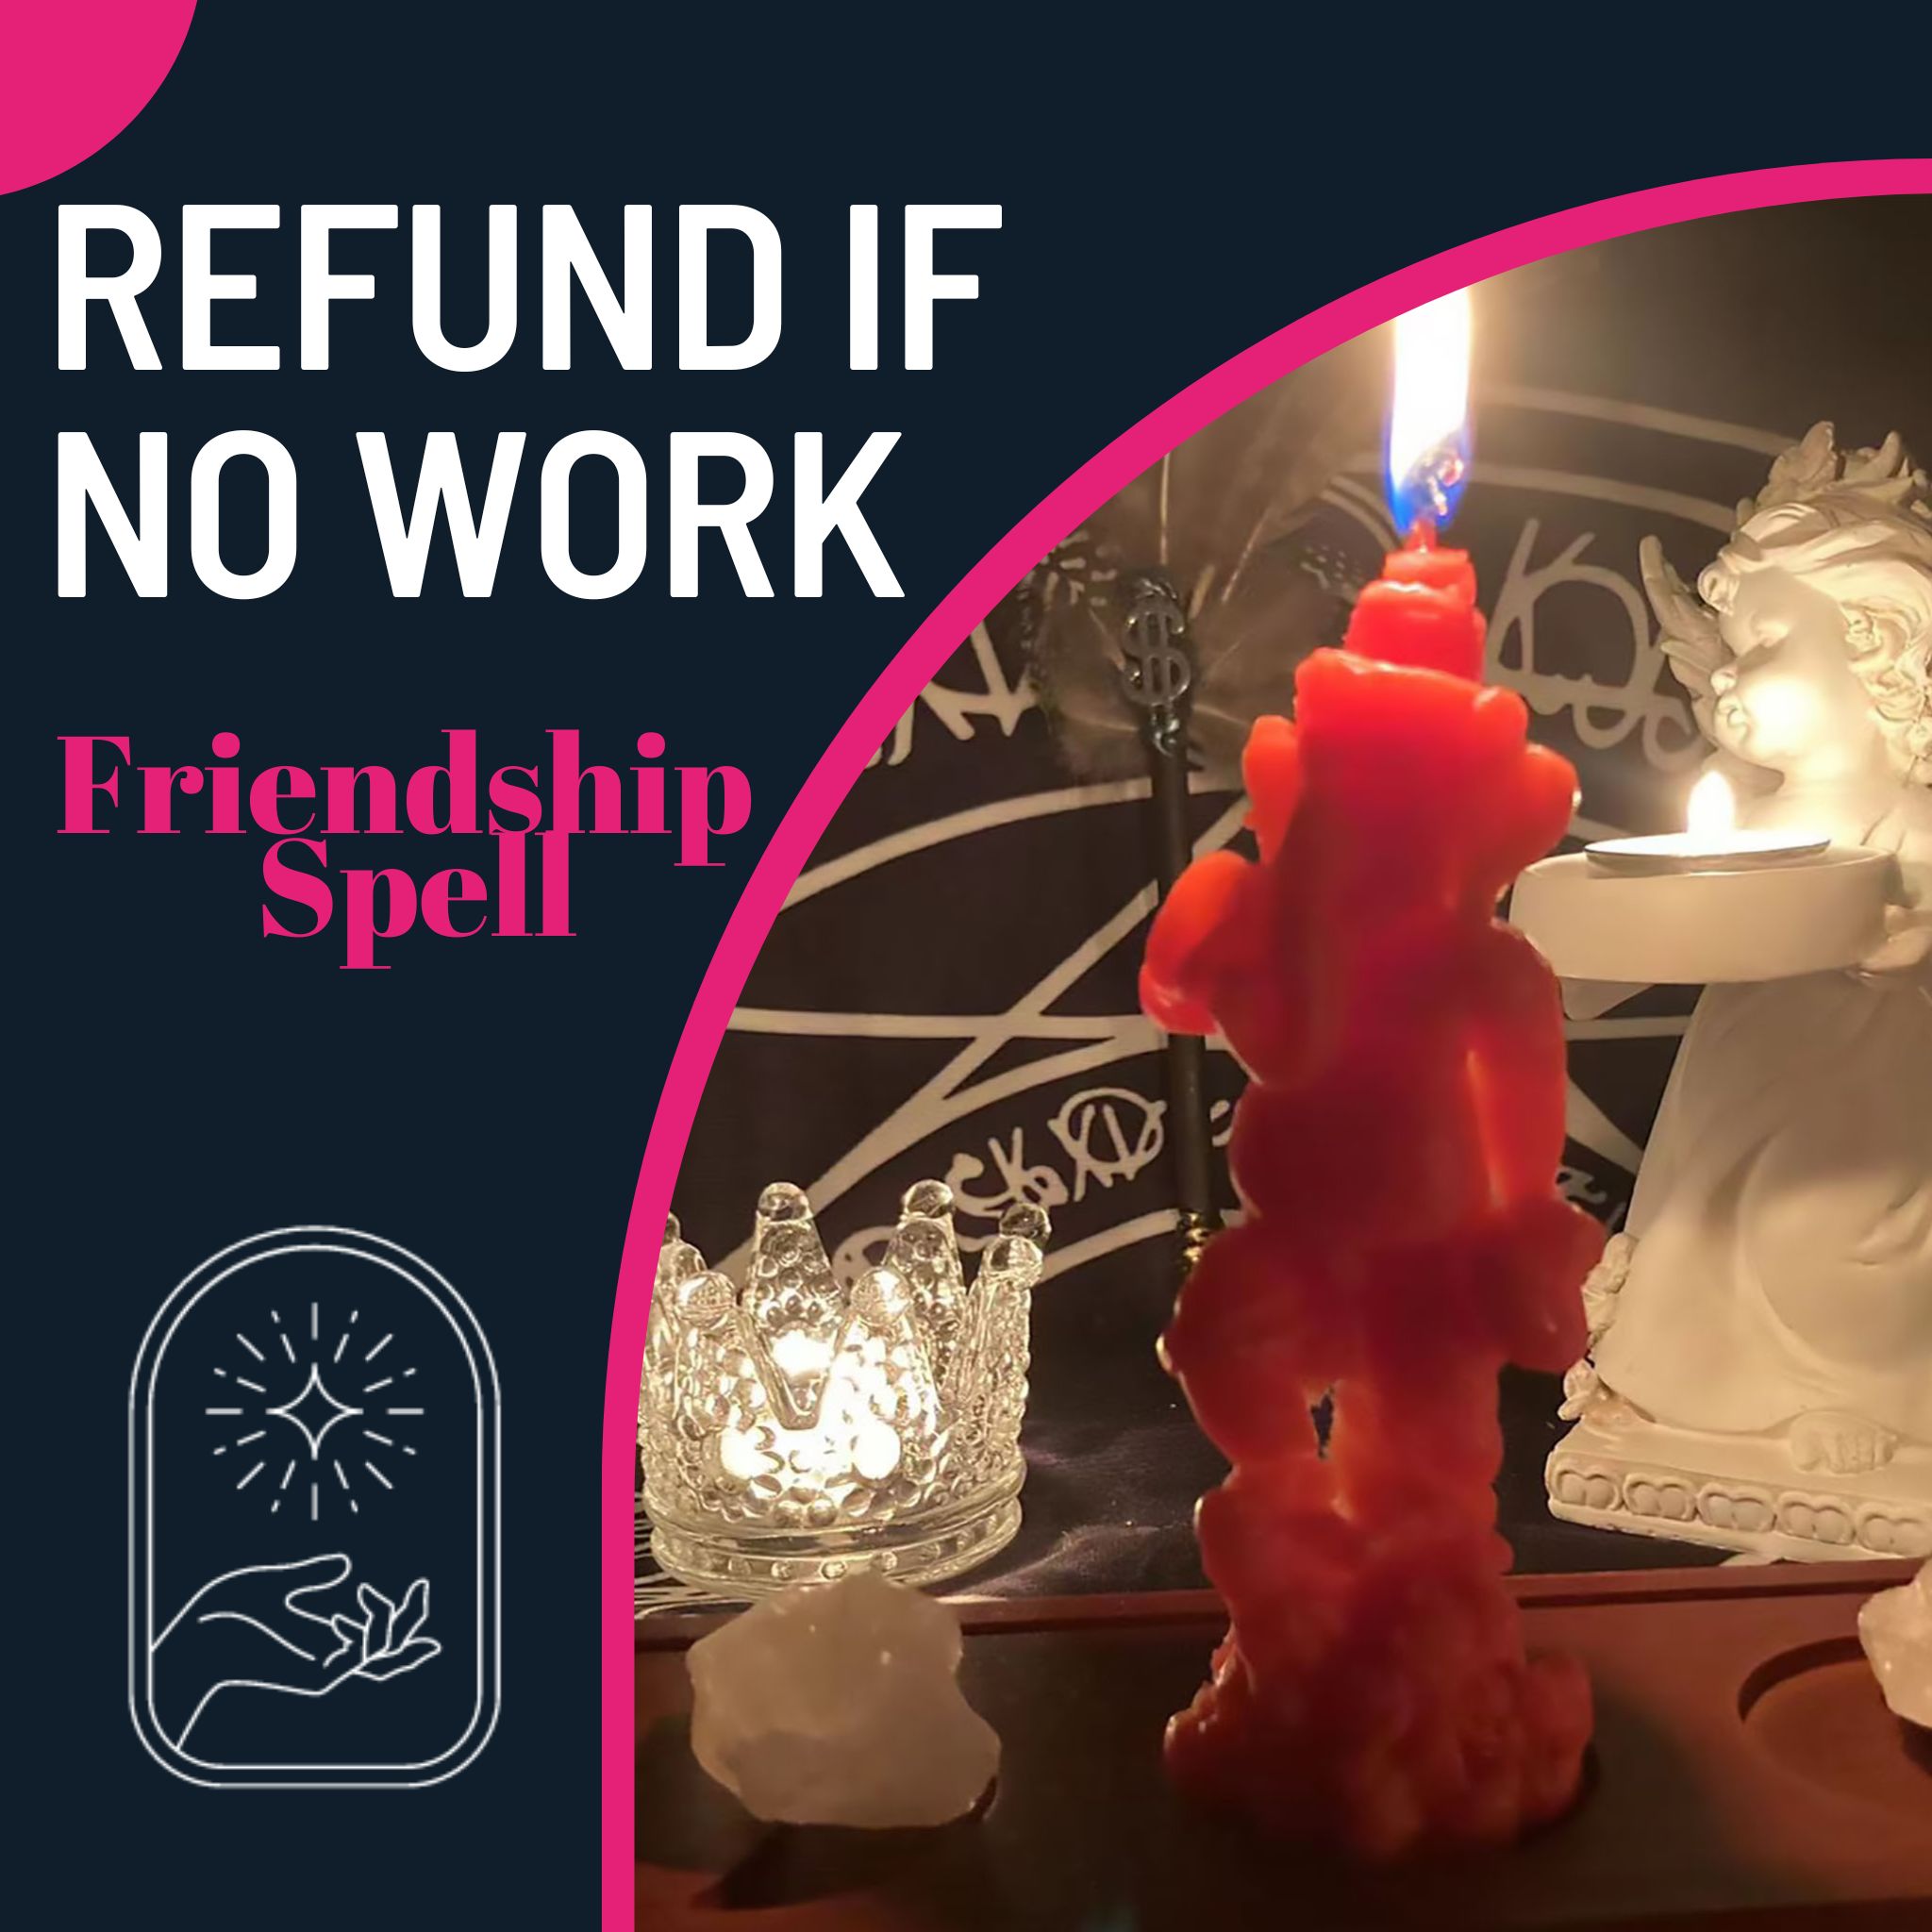 Friendship Spell【Refund if No Work】